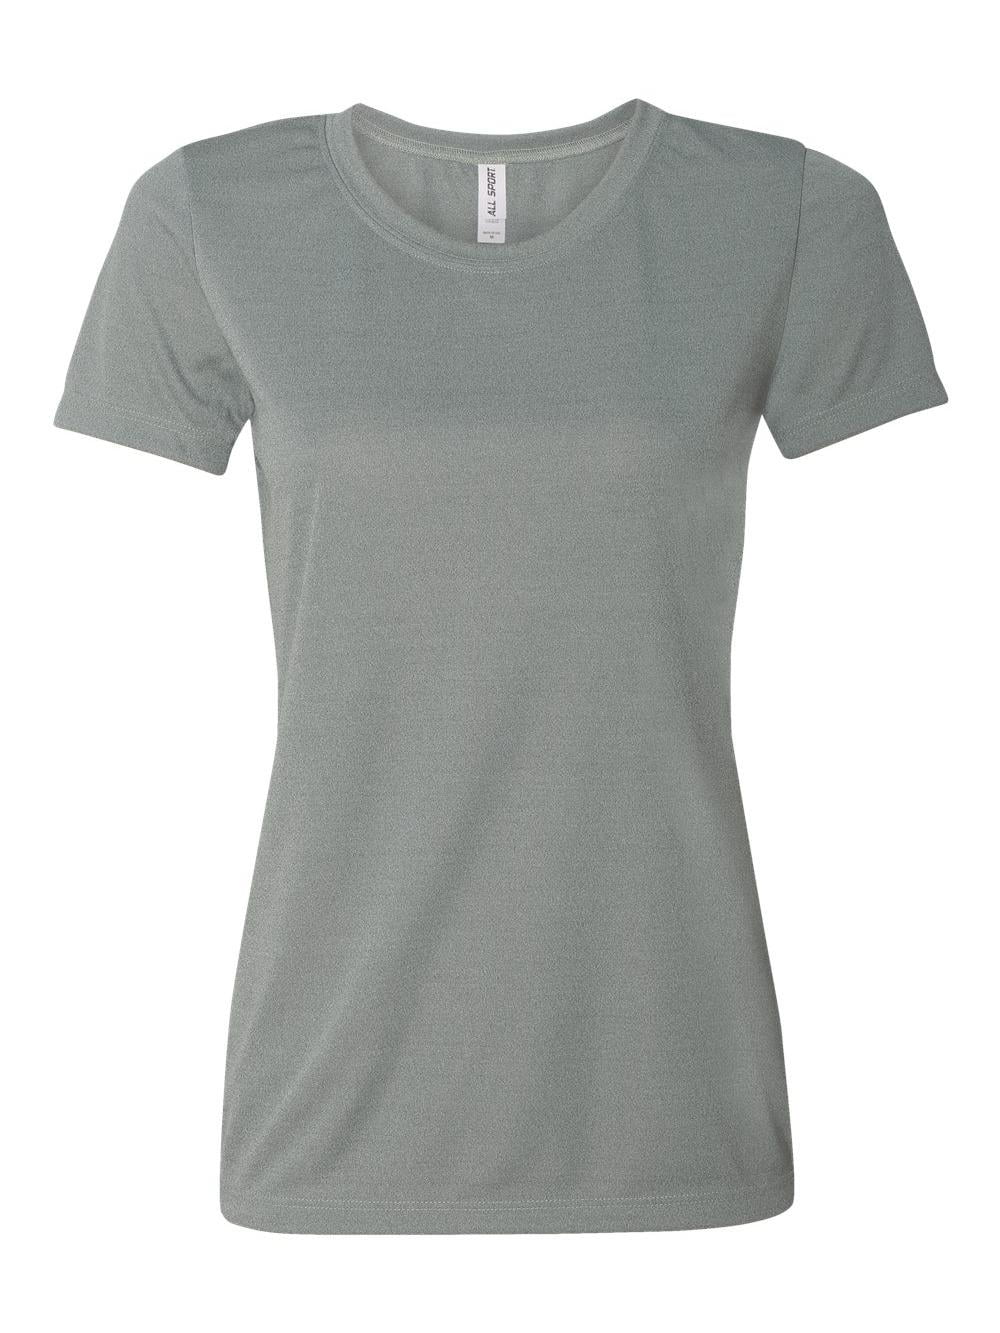 All Sport T-Shirts Women's Polyester T-Shirt - Walmart.com